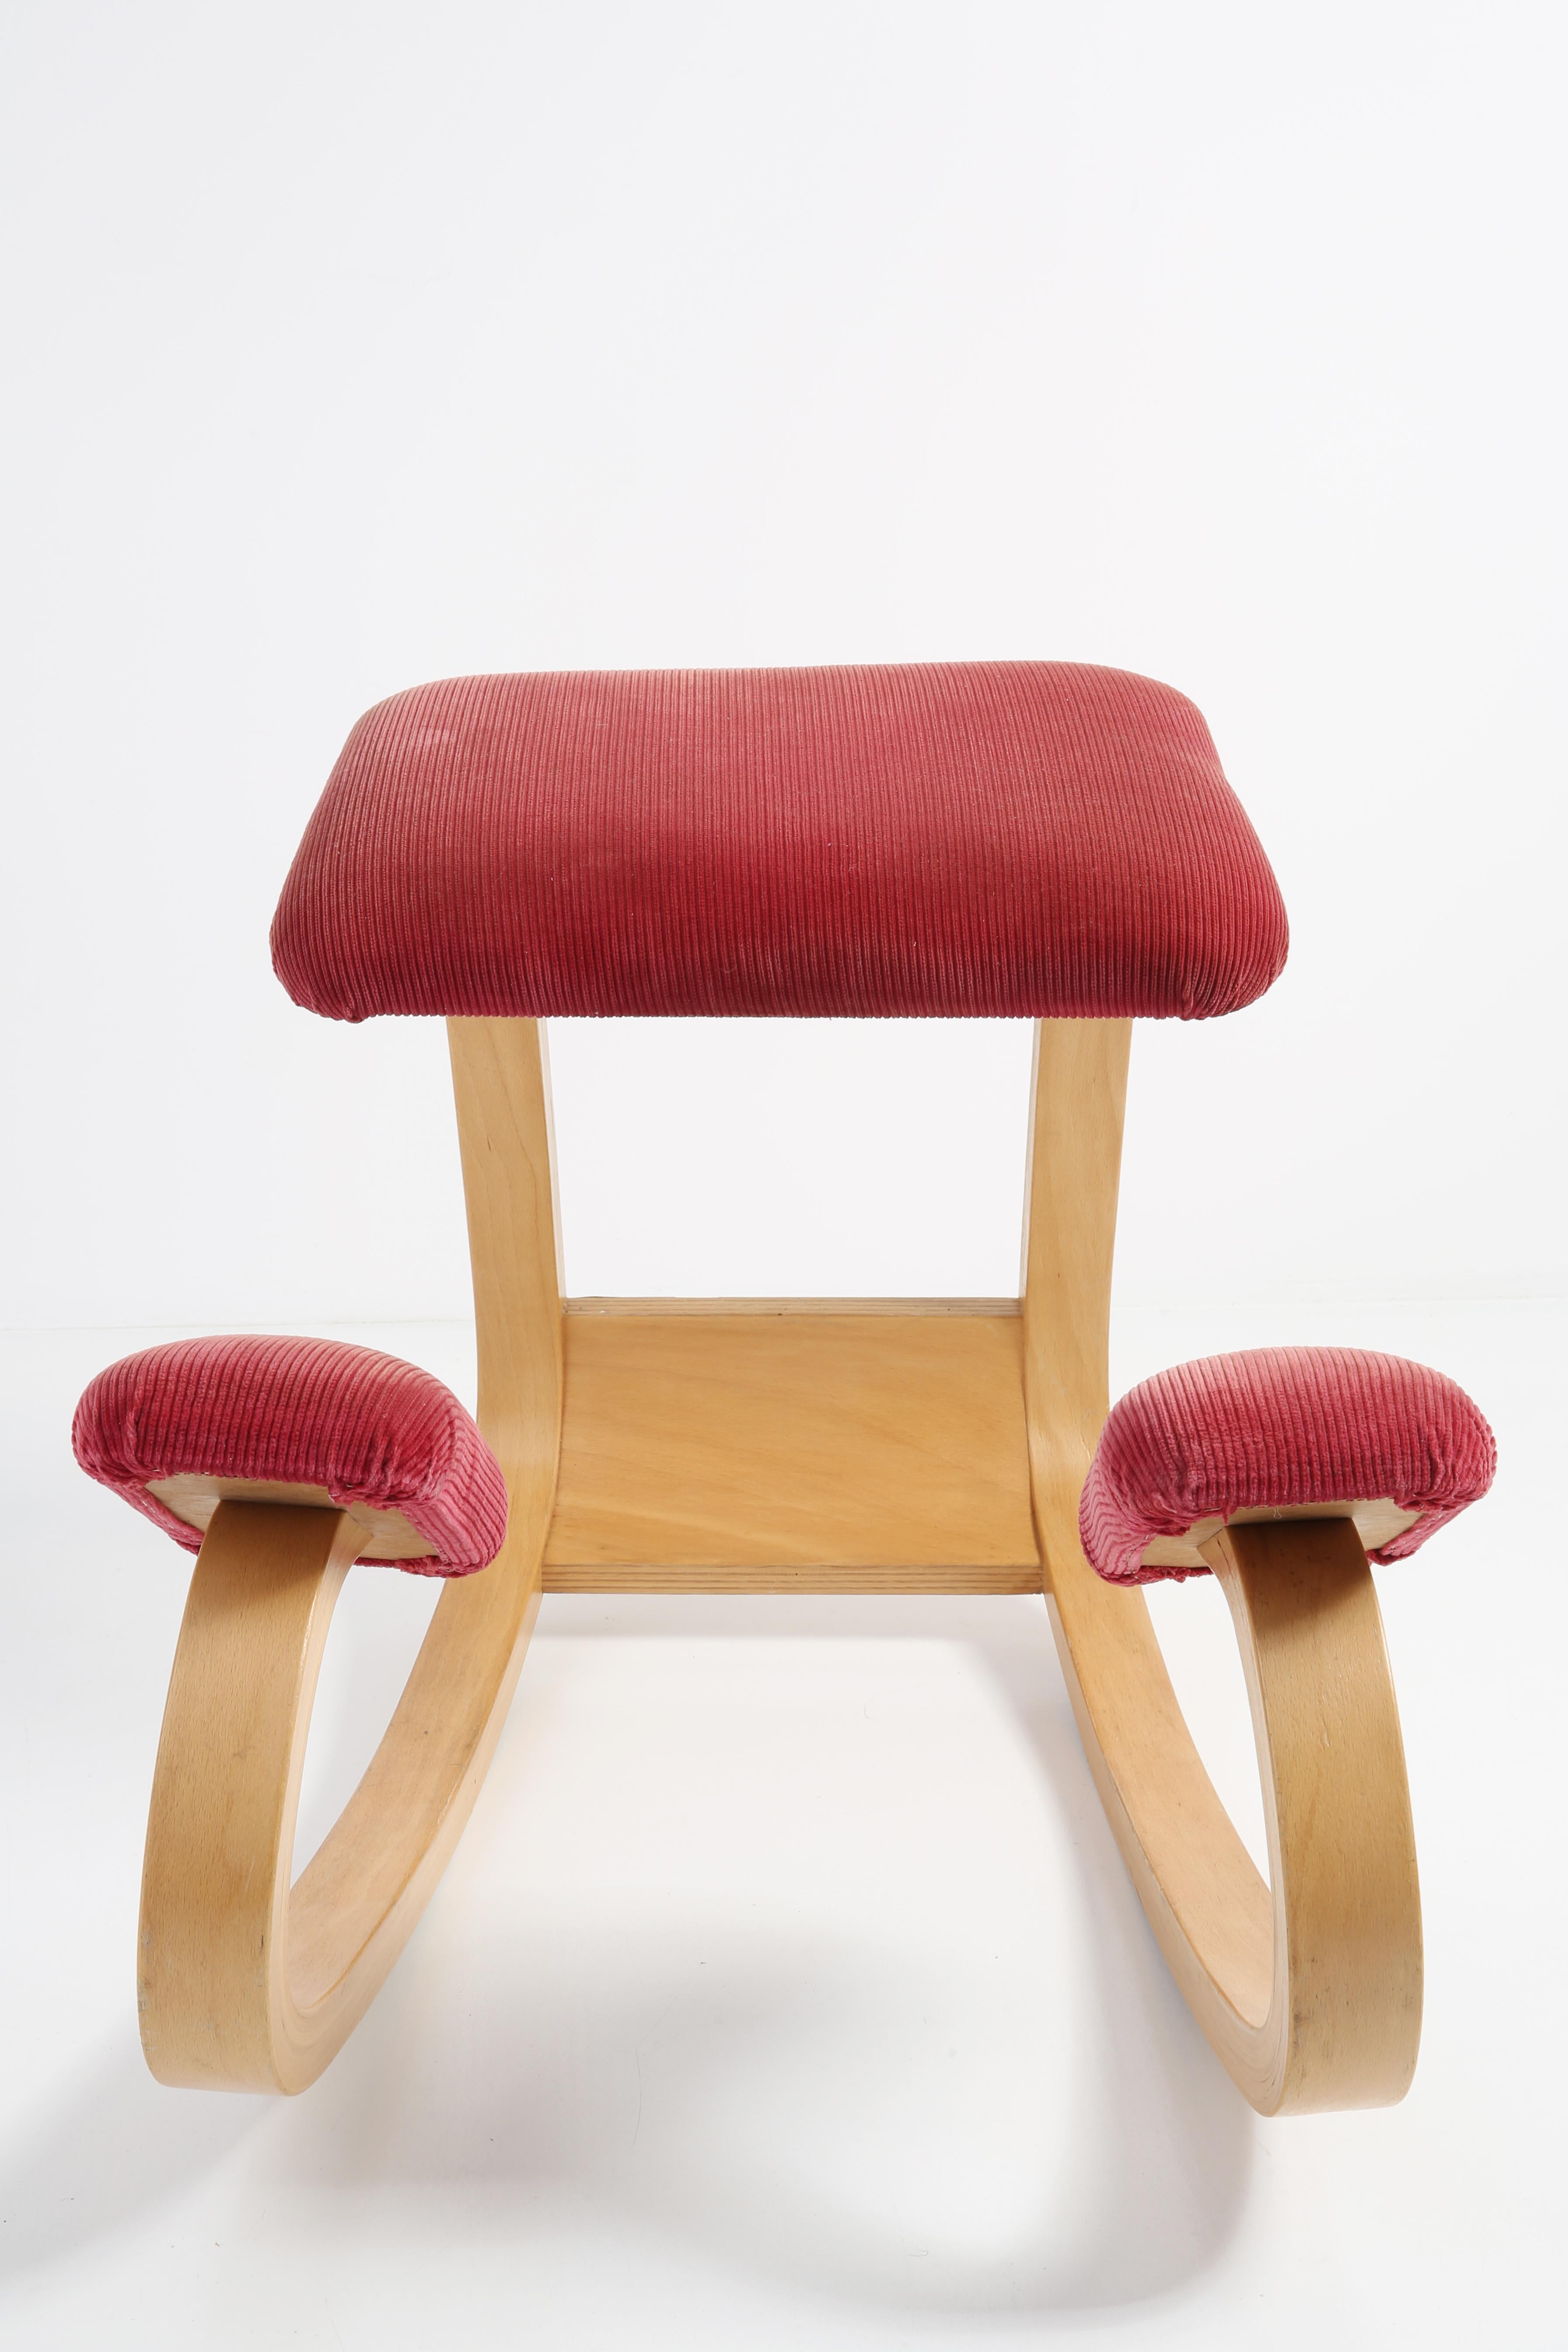 20th Century Variable Balans Peter Opsvik Kneeling Ergonomic Chair, Varier, 1970s, Norway